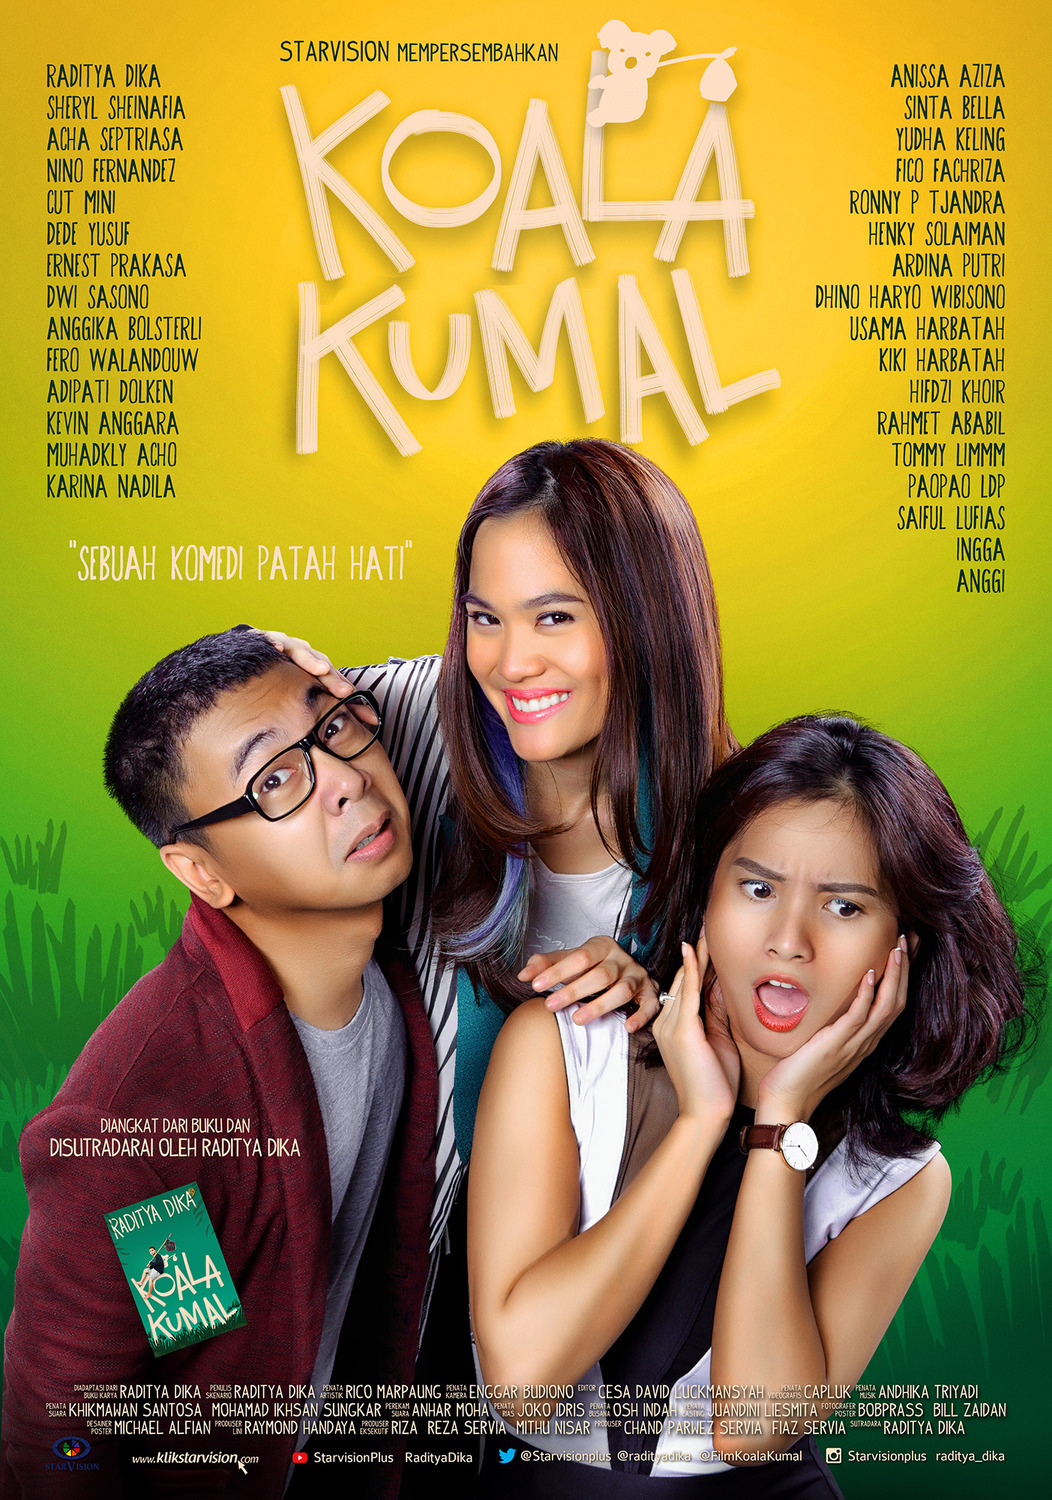 Extra Large Movie Poster Image for Koala Kumal (#3 of 3)